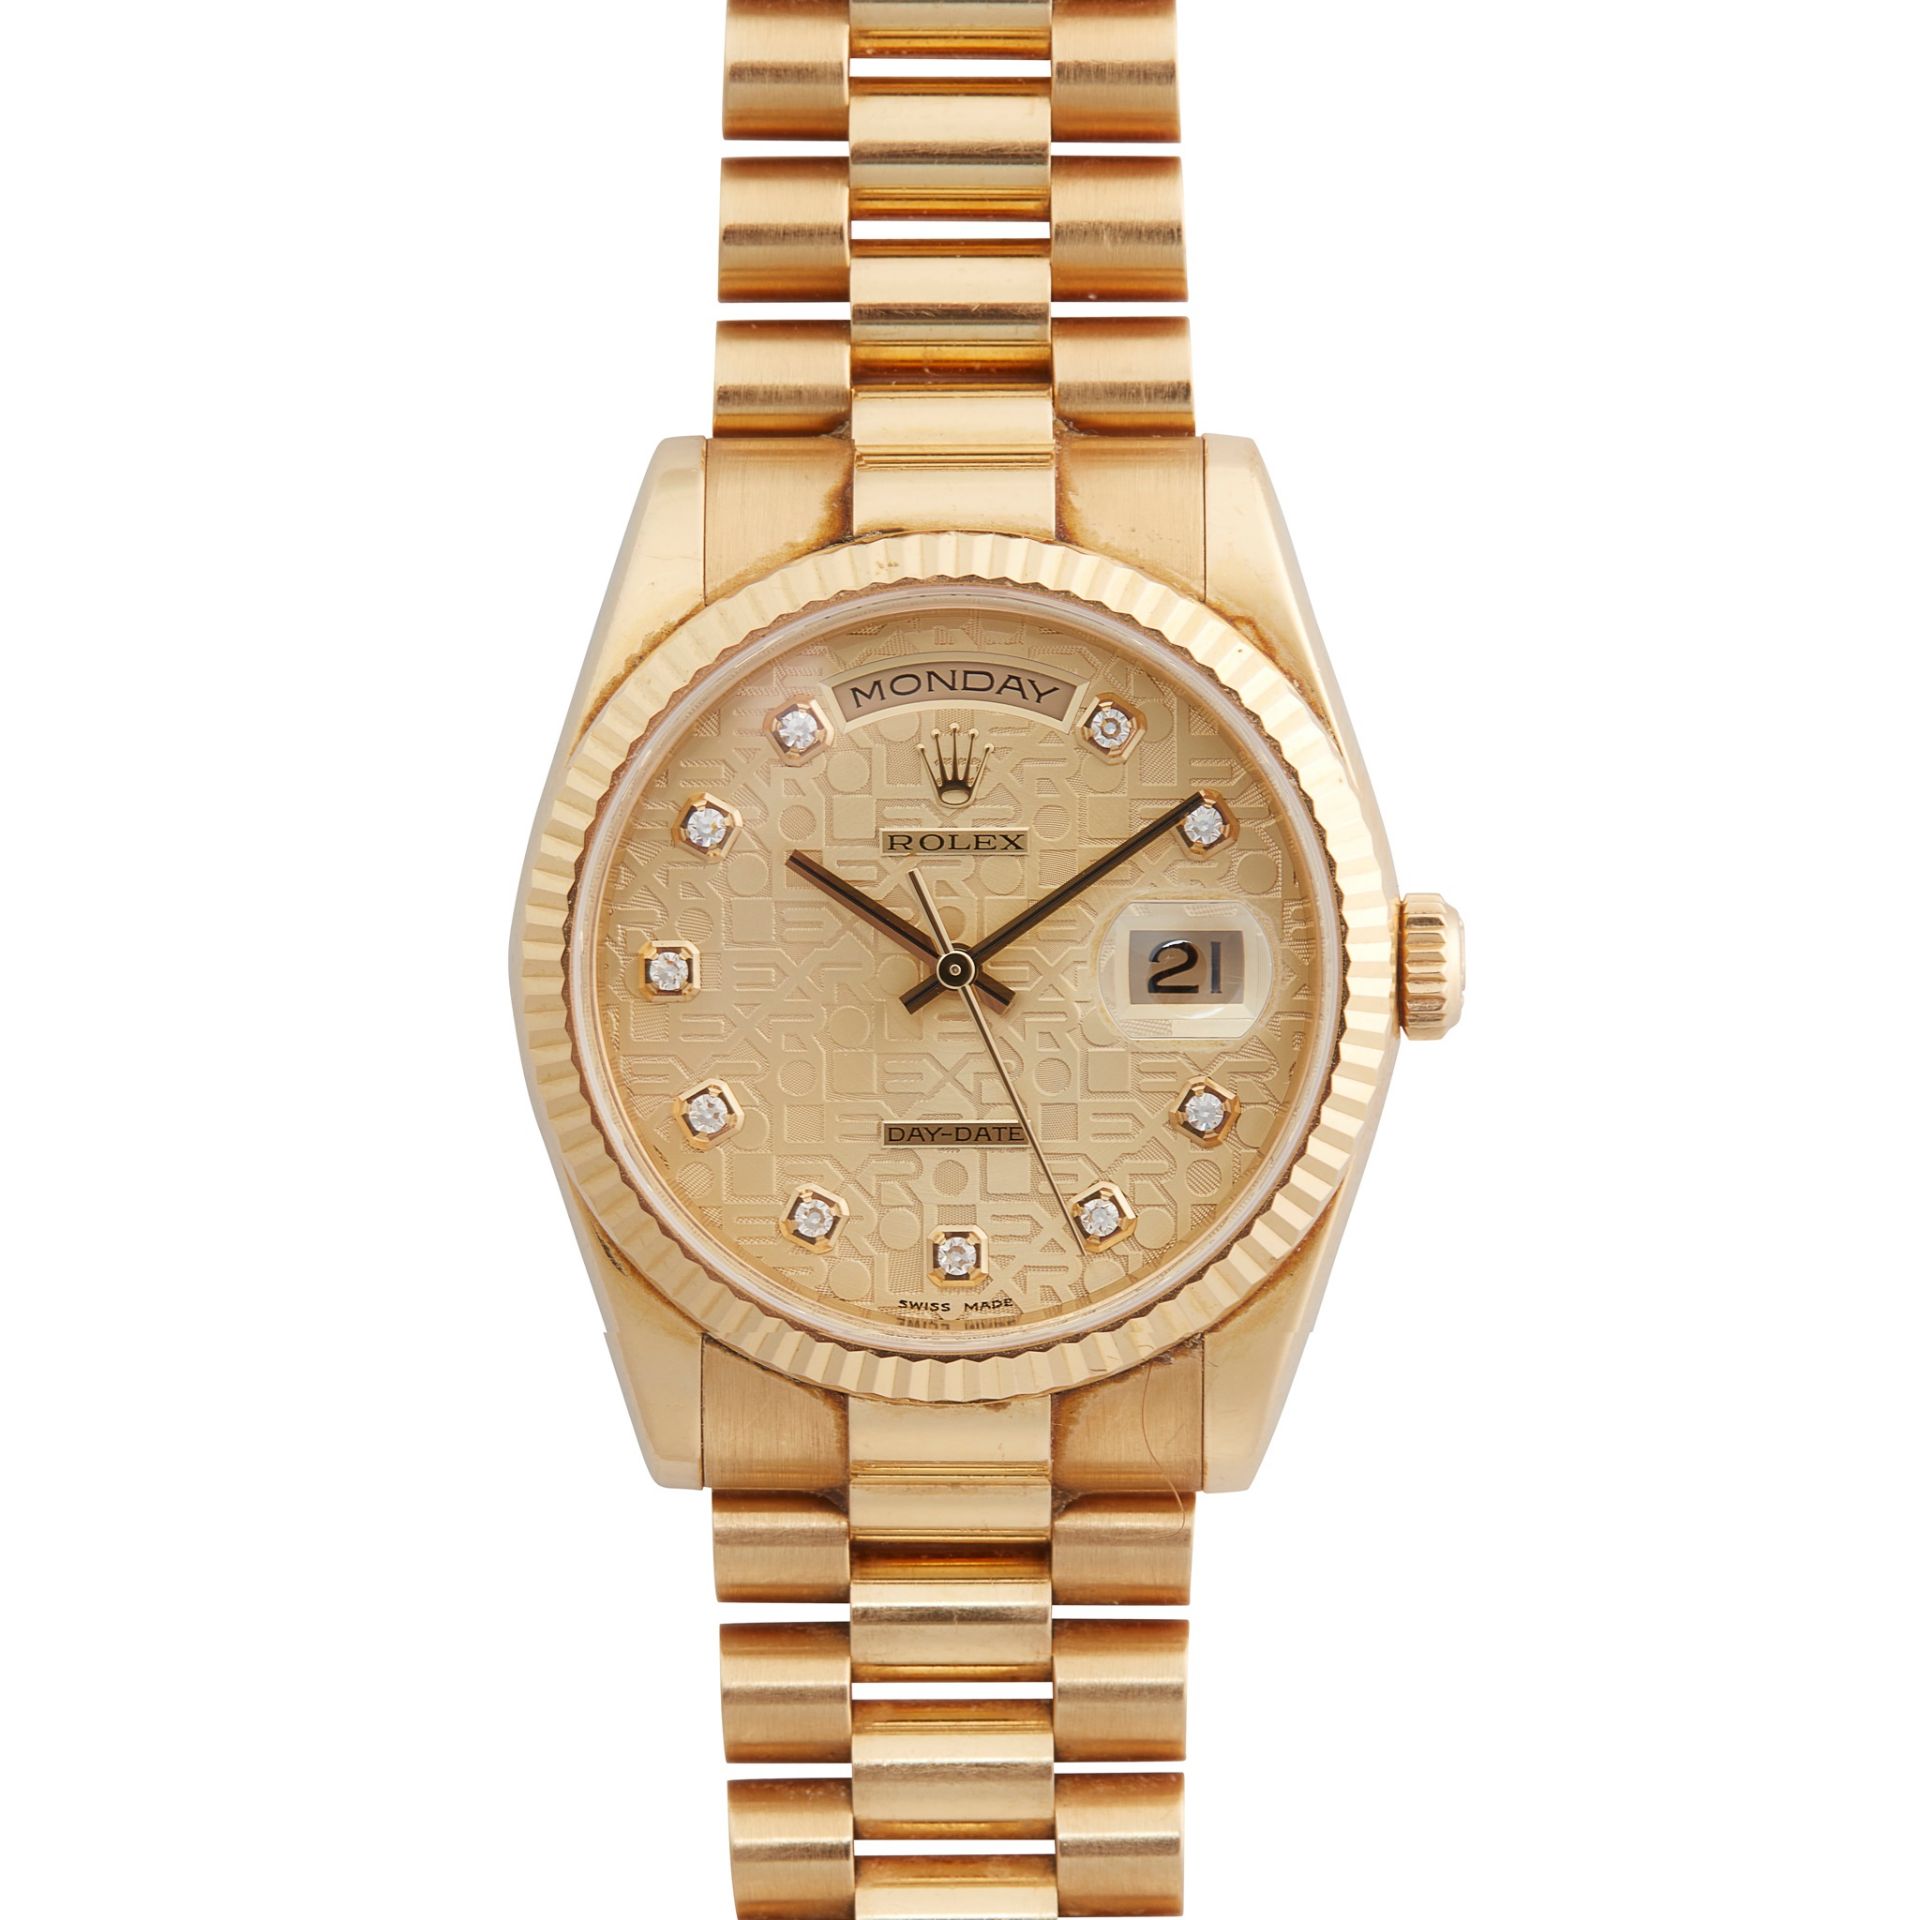 Rolex: A gentleman's gold watch